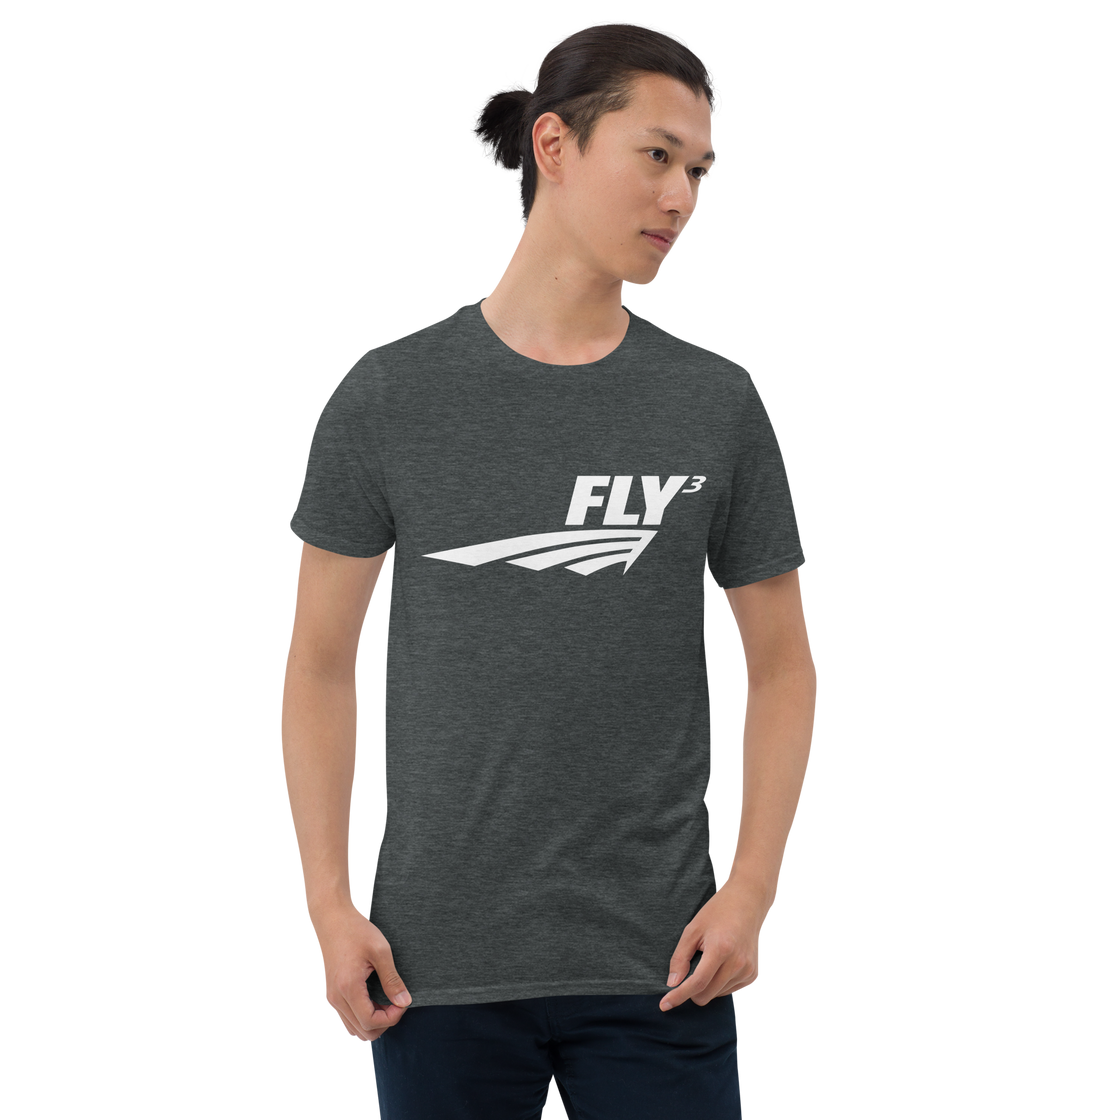 FLY³ Premium Tee | Flycube